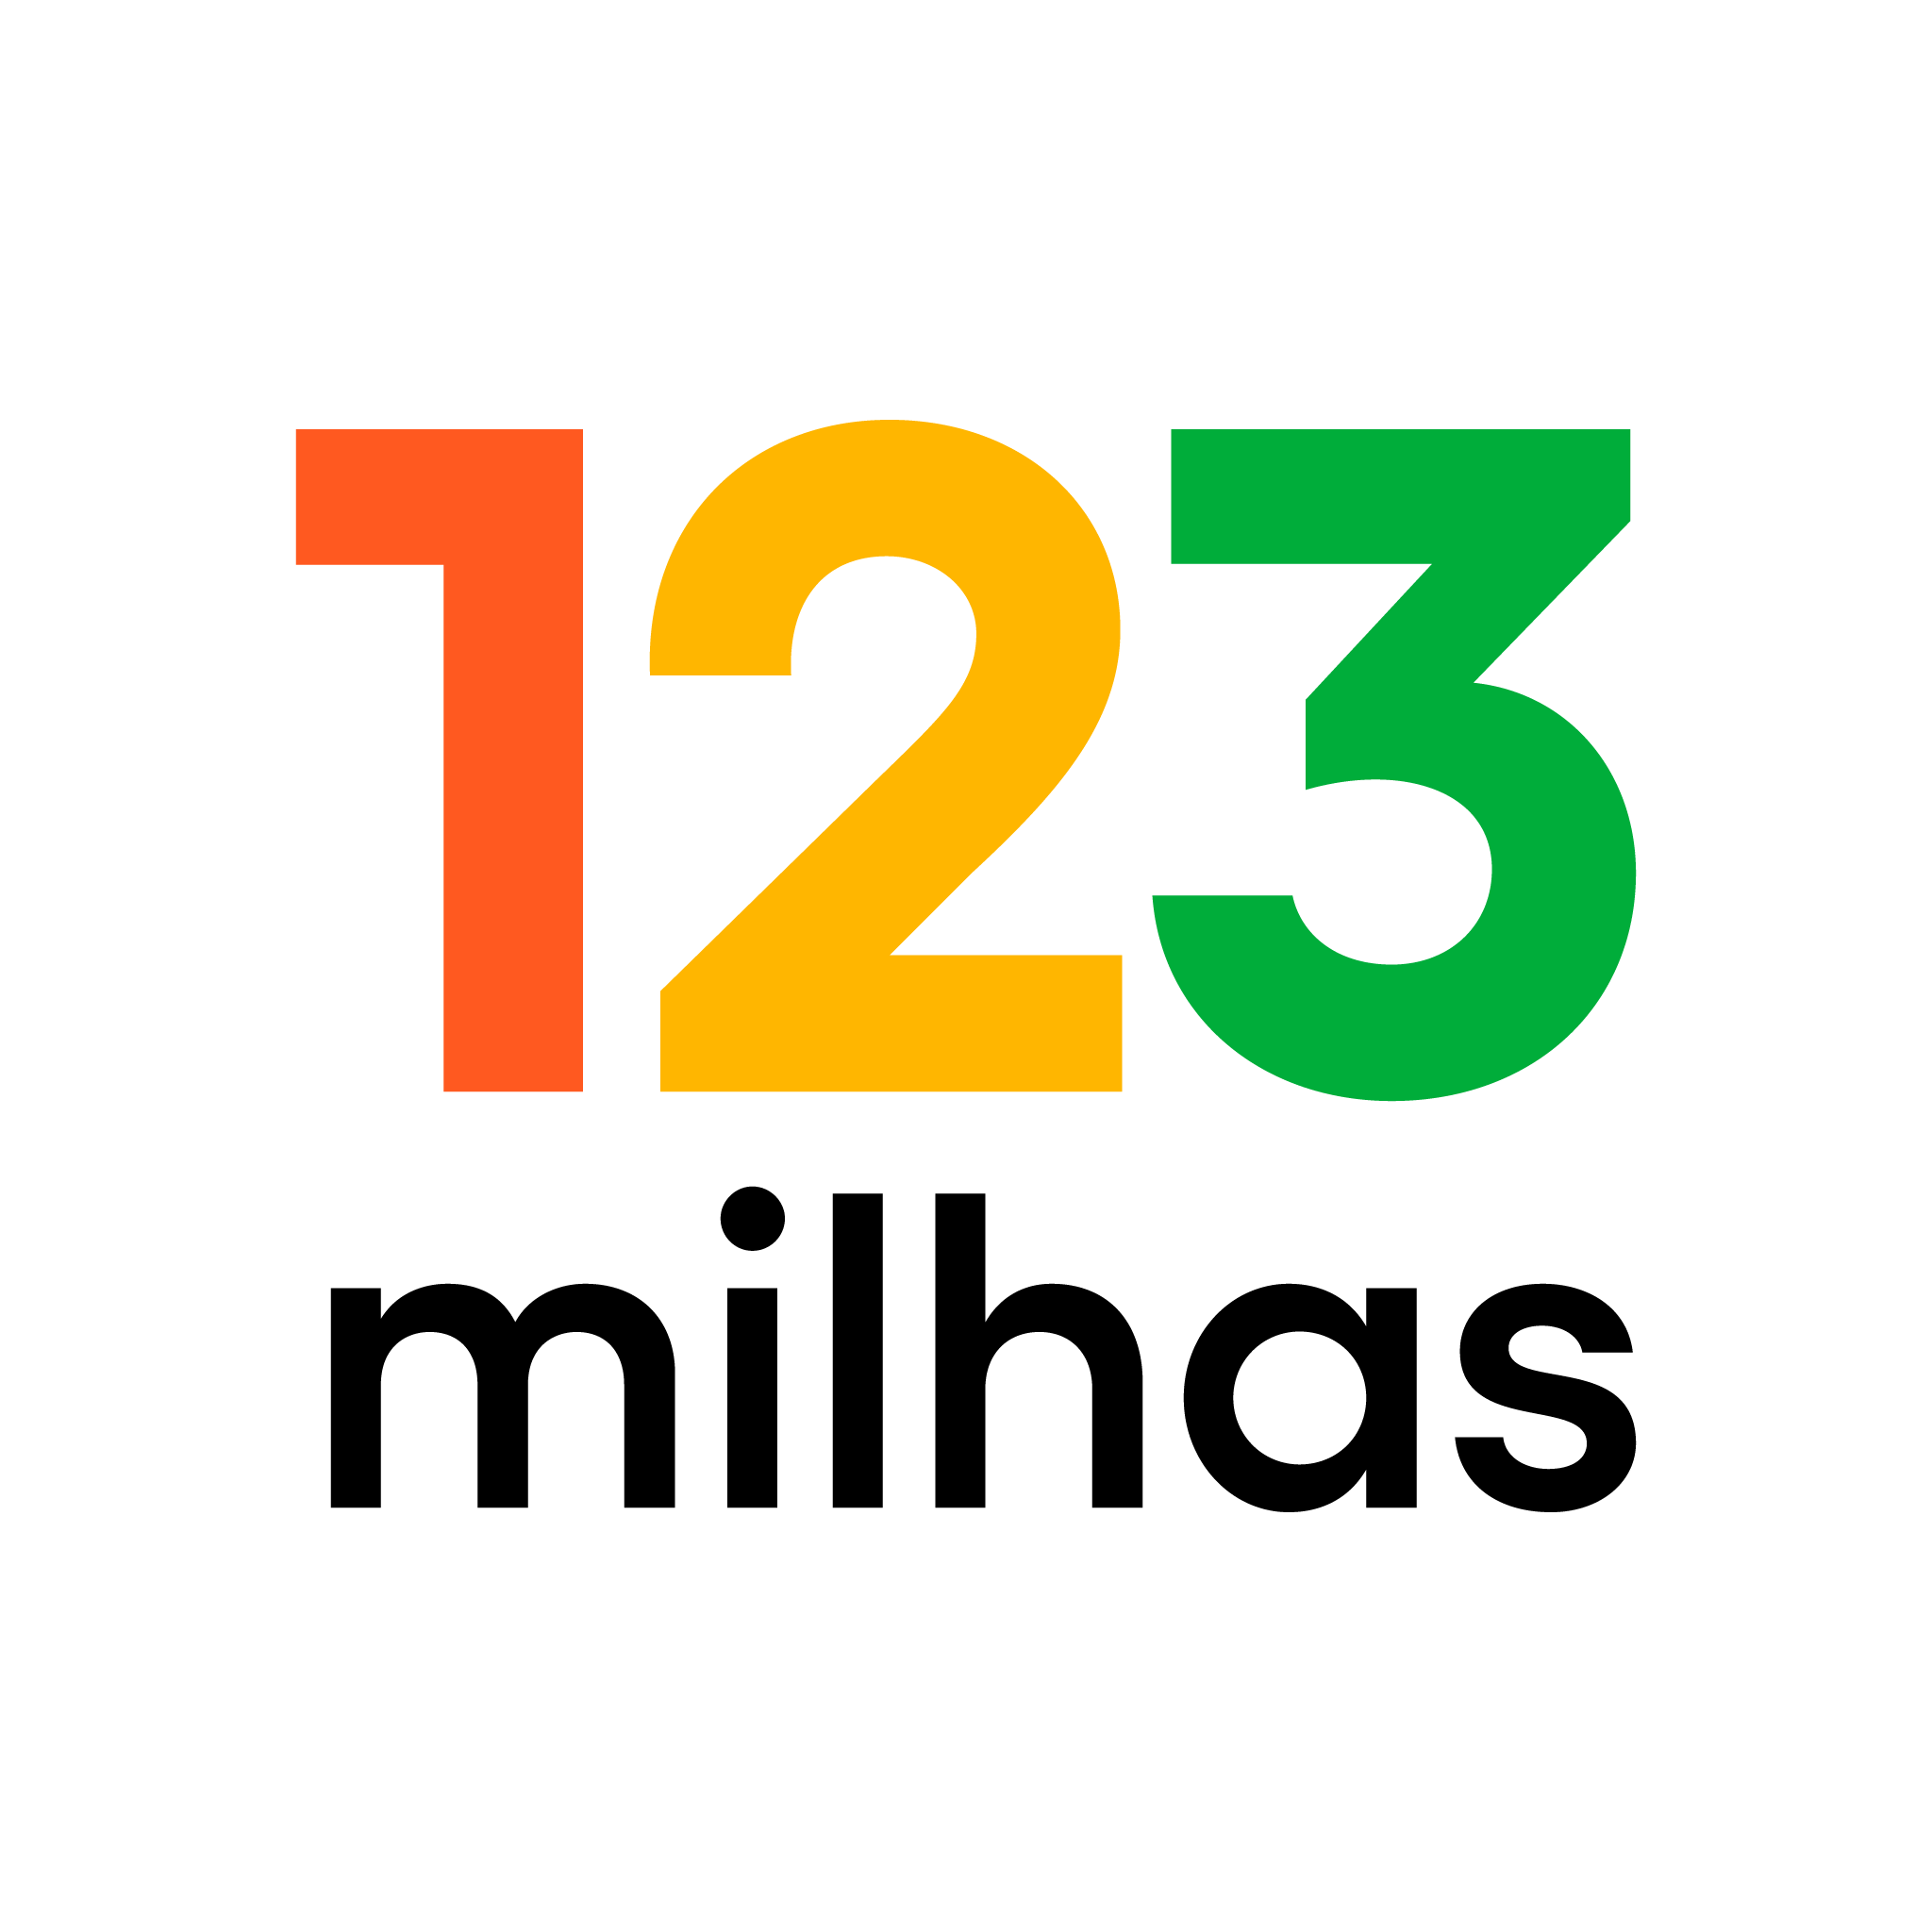 Justiça de Minas Gerais determina a retomada da recuperação judicial da 123  milhas, Minas Gerais